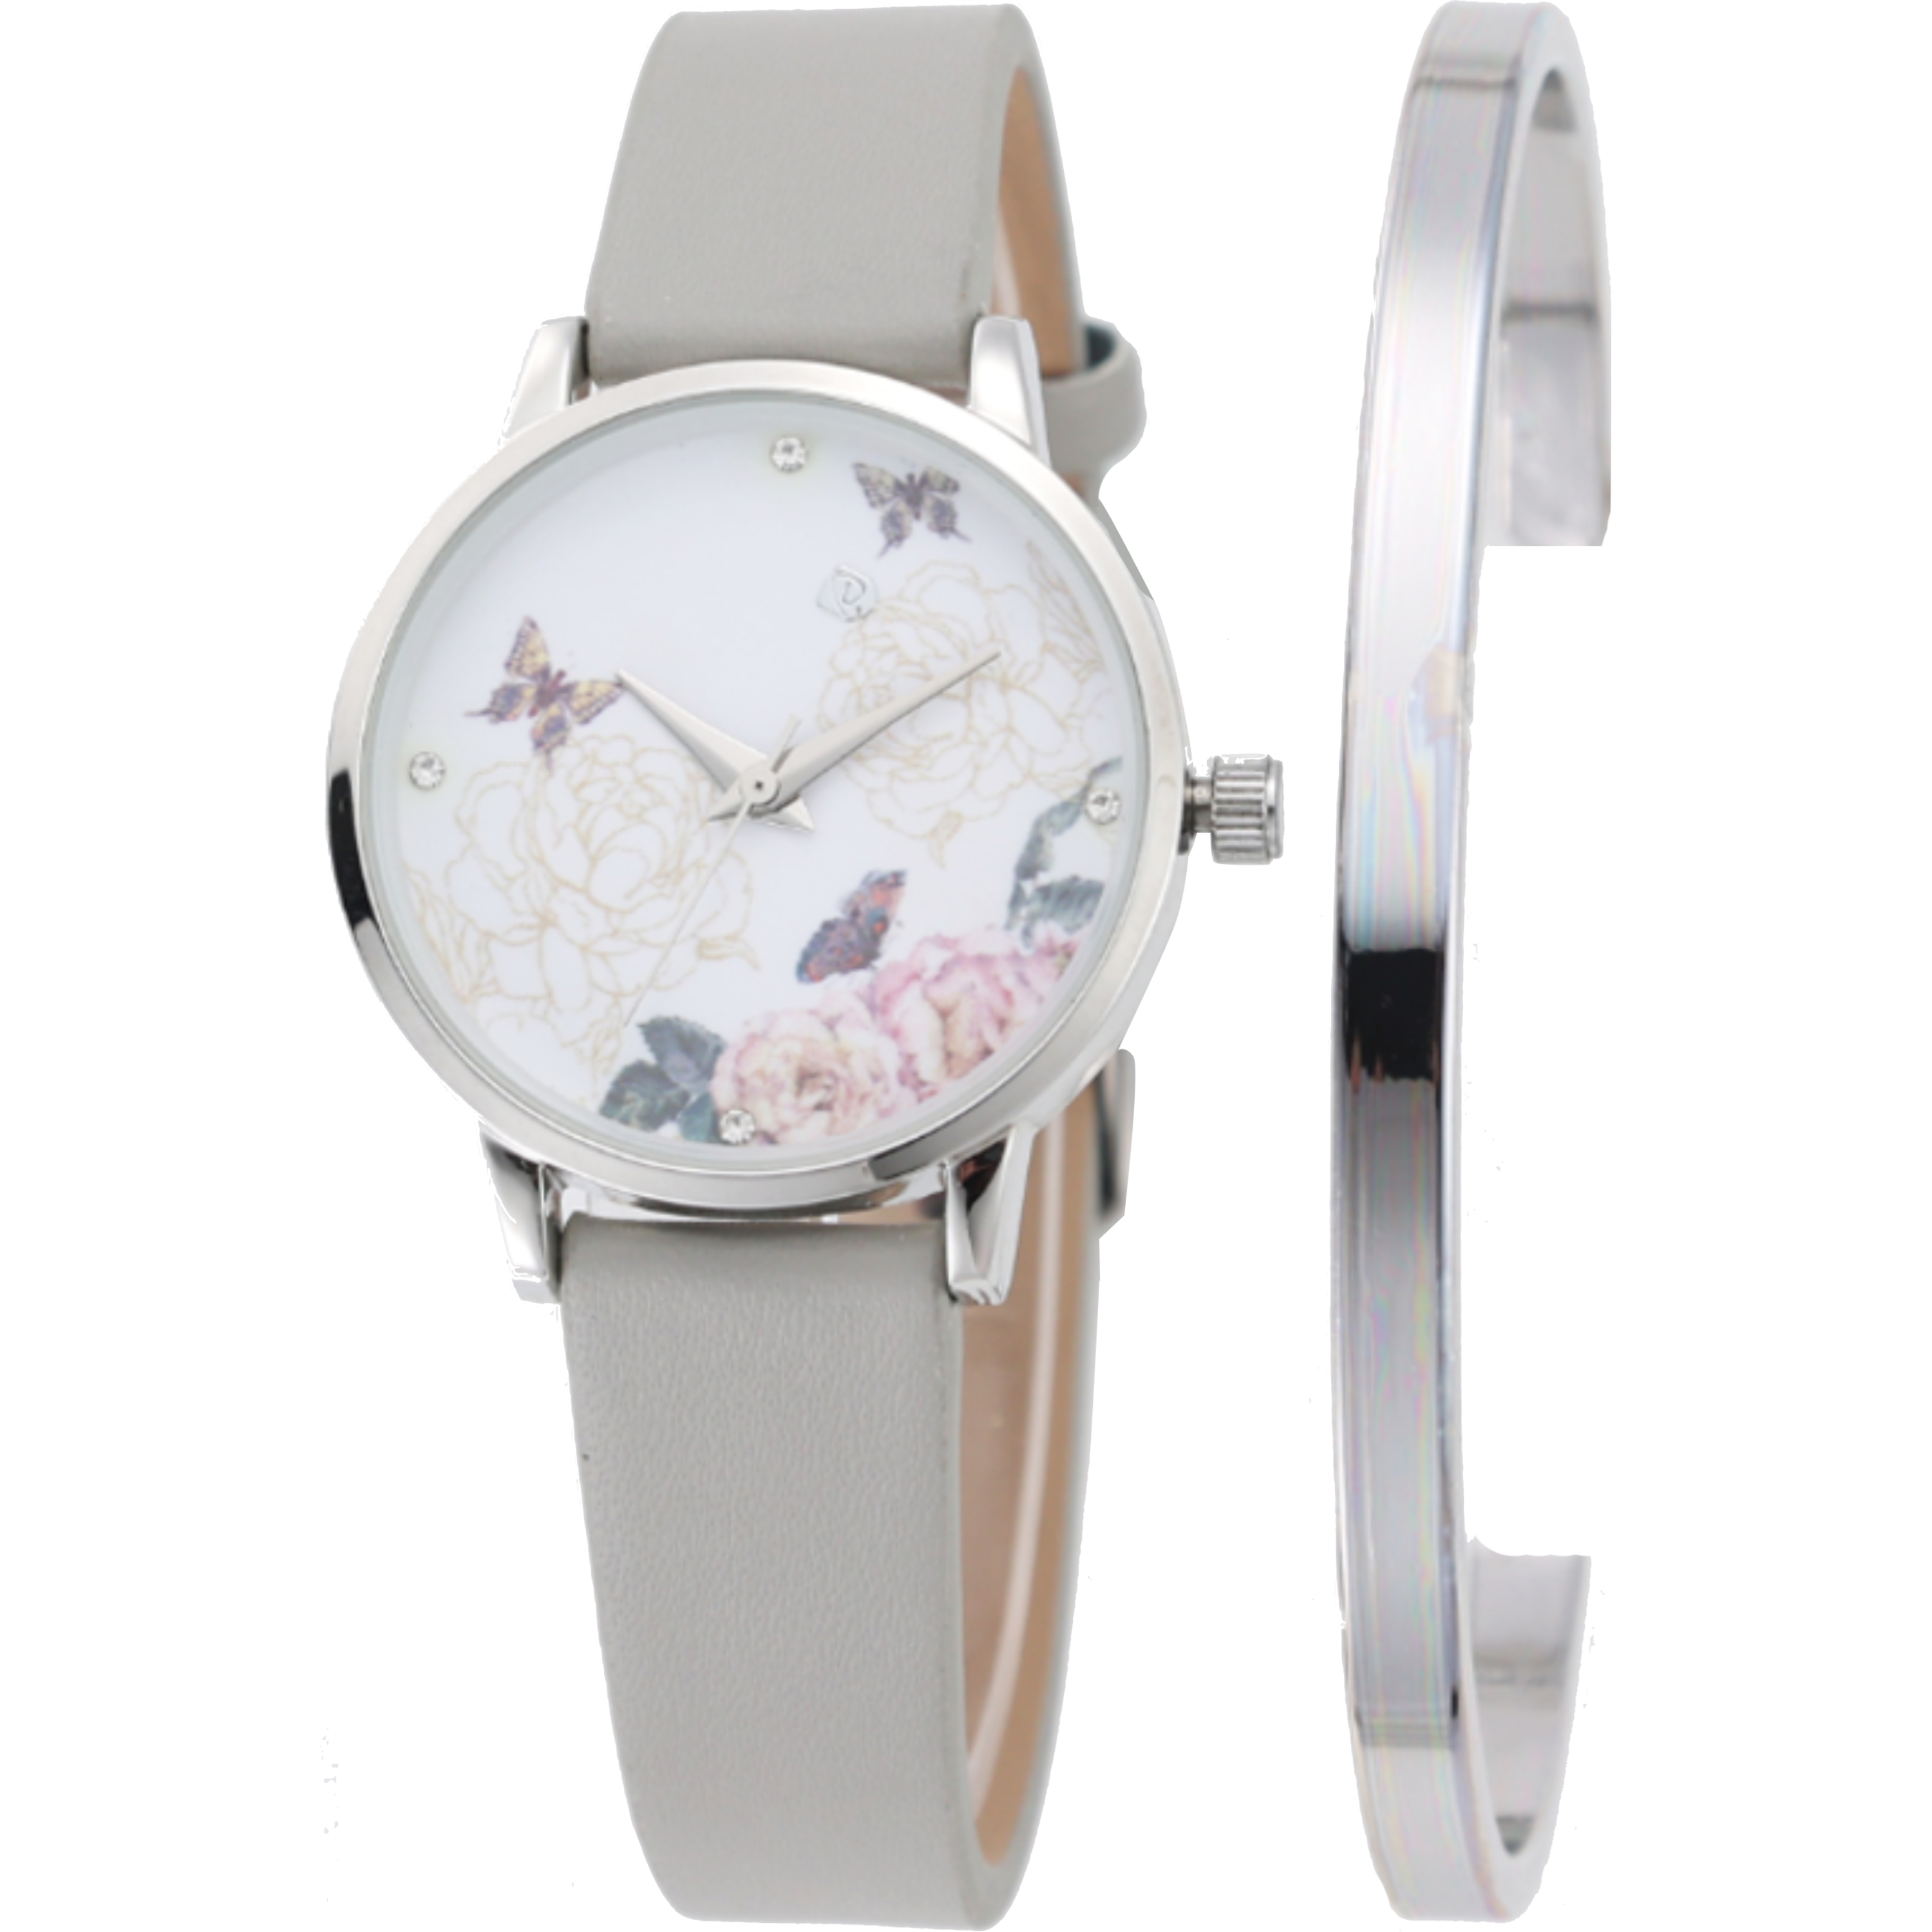 שעון יד לאישה עם צמיד COMTEX SY40 32mm - צבע אפור אחריות לשנה ע